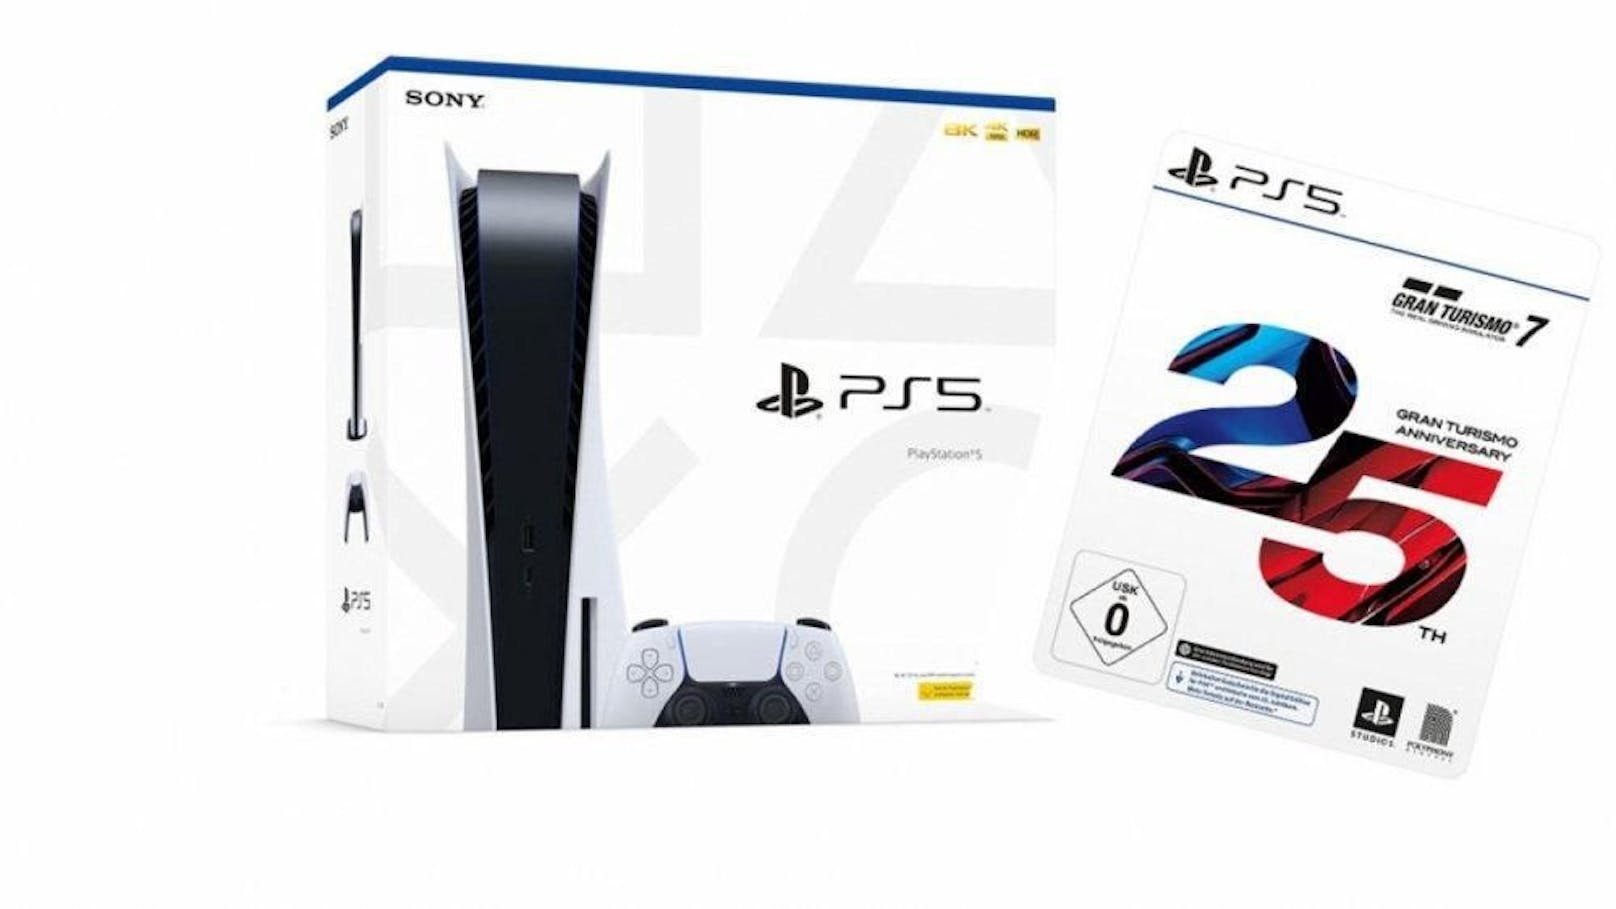 Sony stoppt den Verkauf der Playstation 5 in Russland. Dies wegen des anhaltenden Ukraine-Kriegs. Auch das neu veröffentlichte Rennspiel "Gran Turismo 7" wird nicht mehr verkauft.